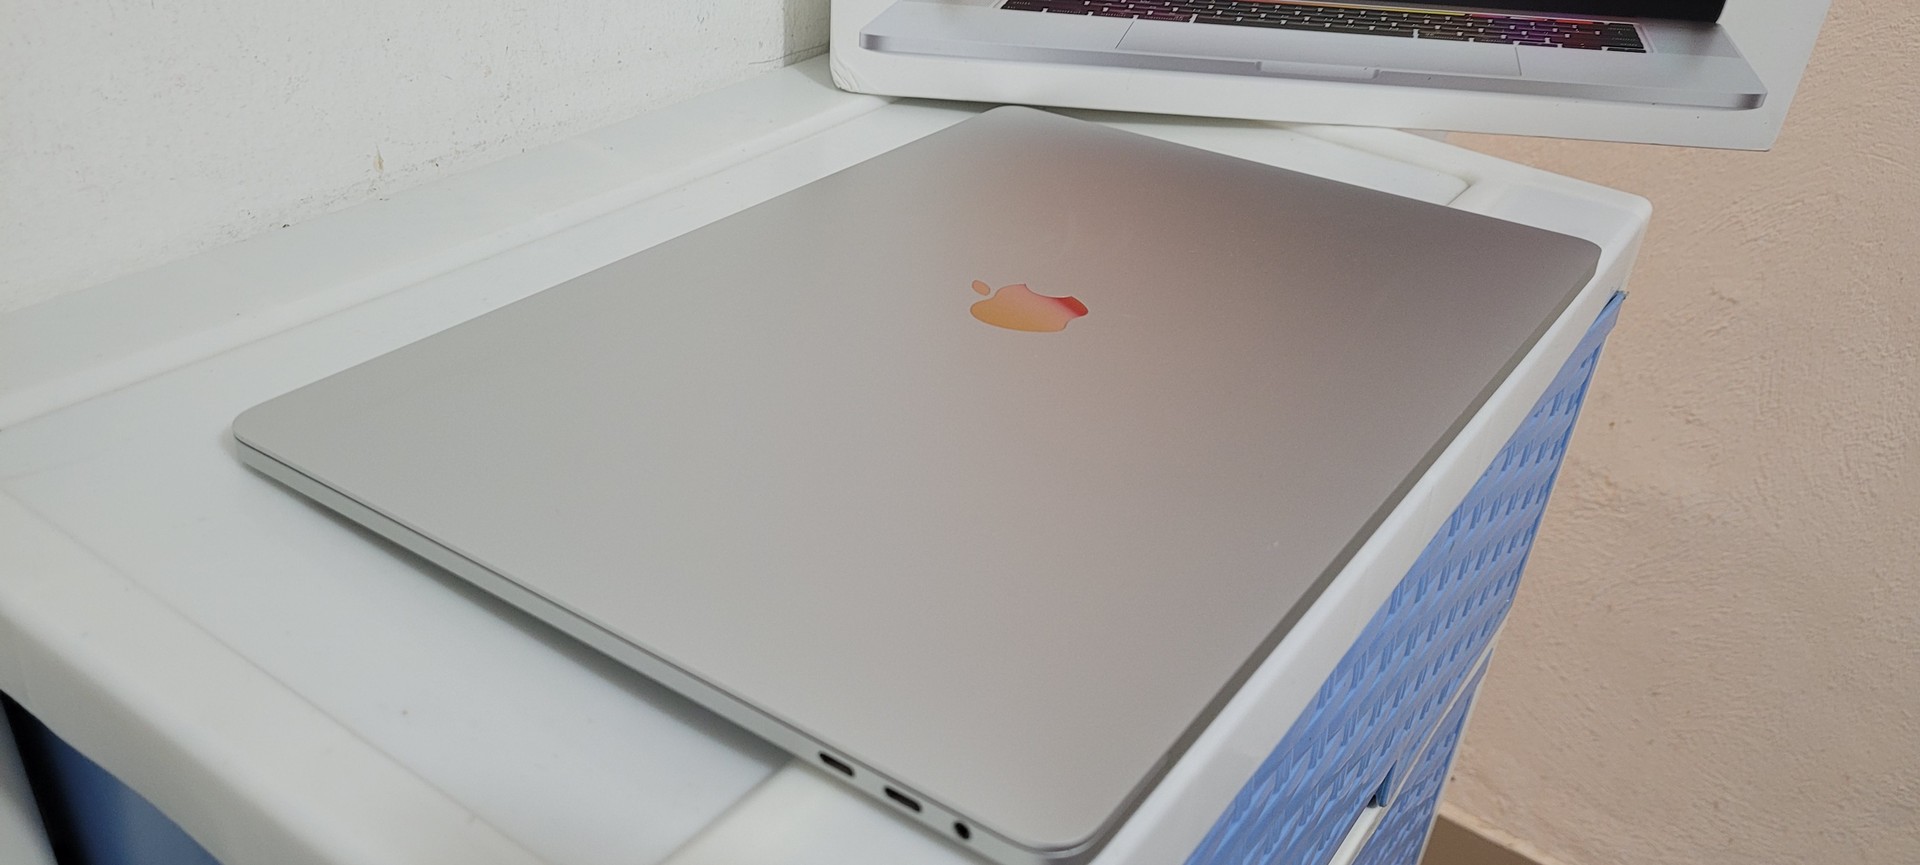 computadoras y laptops - Macbook Pro 15 Pulg Core i7 Ram 16gb en Caja año 2018 2